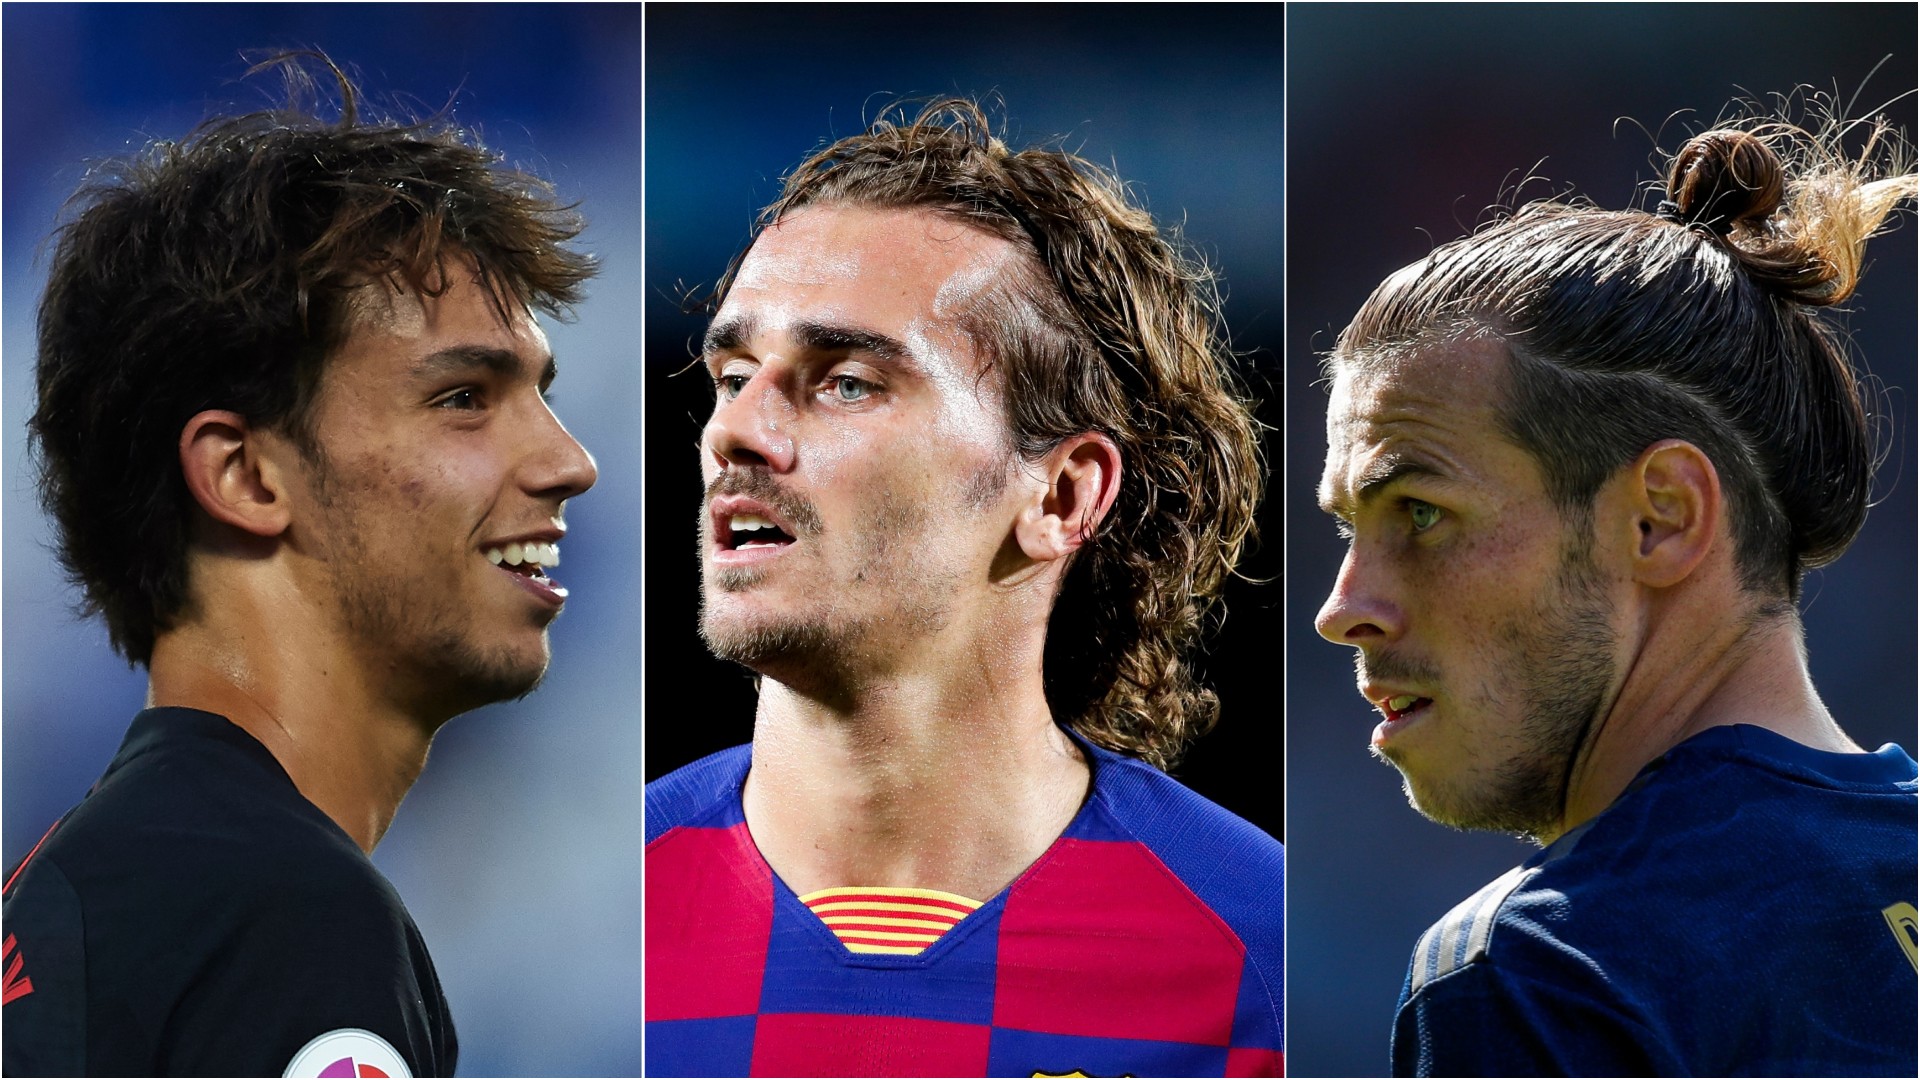 As tendências de penteados do campeonato espanhol em 2019 (Foto: Getty Images)